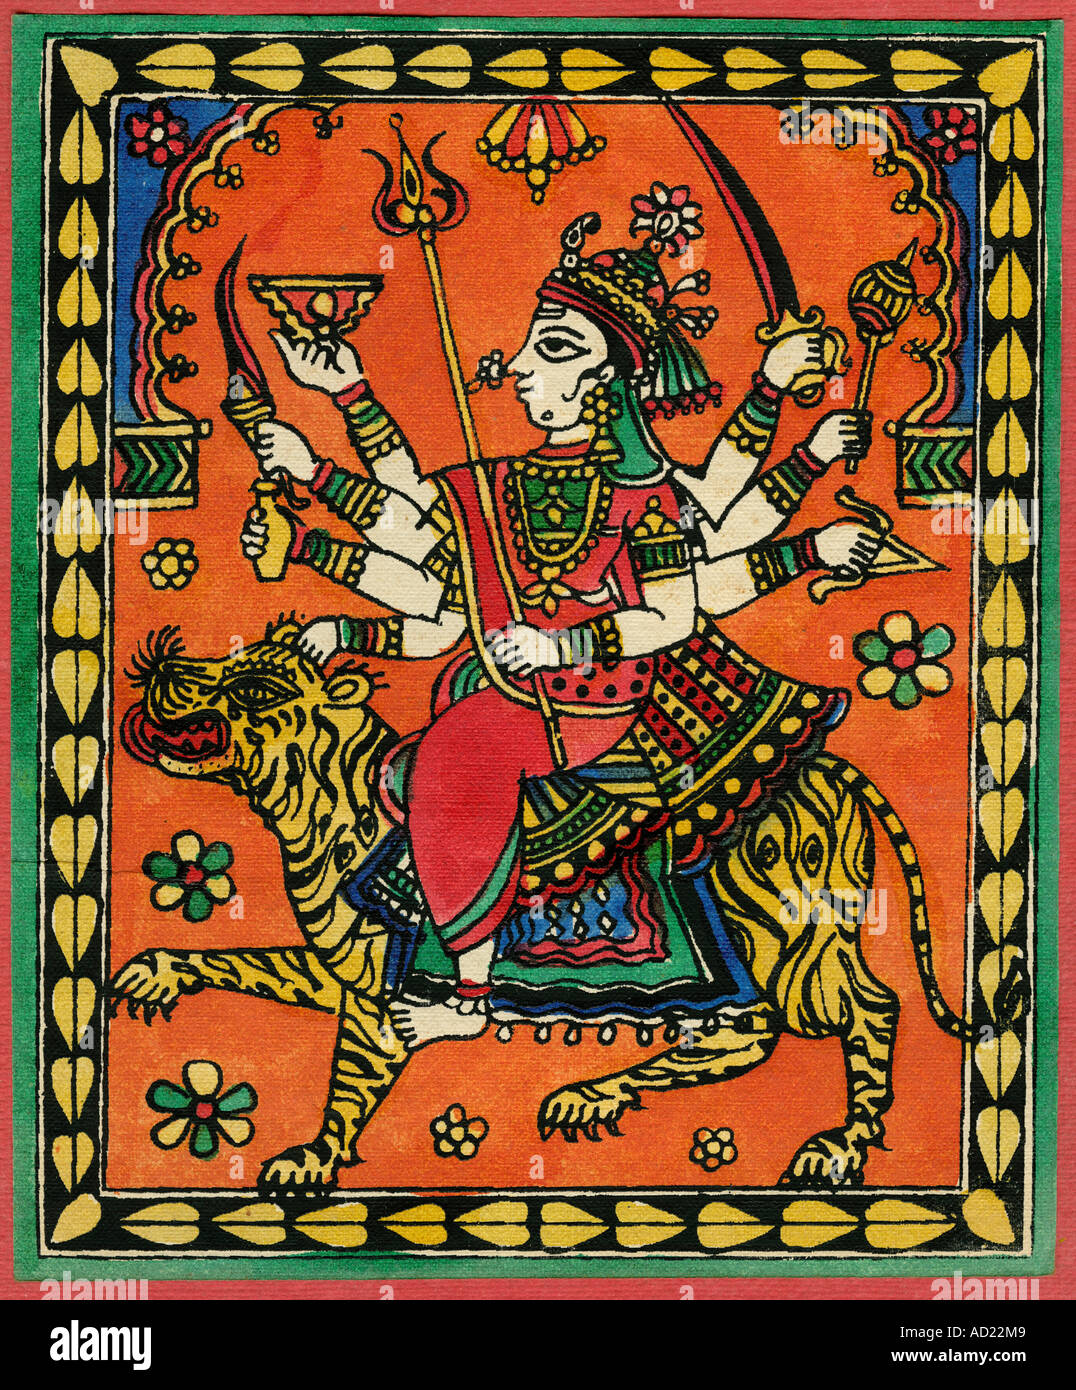 L'art populaire indien du Rajasthan illustration de la Déesse Durga avec huit mains tenant un sabre assis sur tiger peinture sur tissu, Inde Banque D'Images